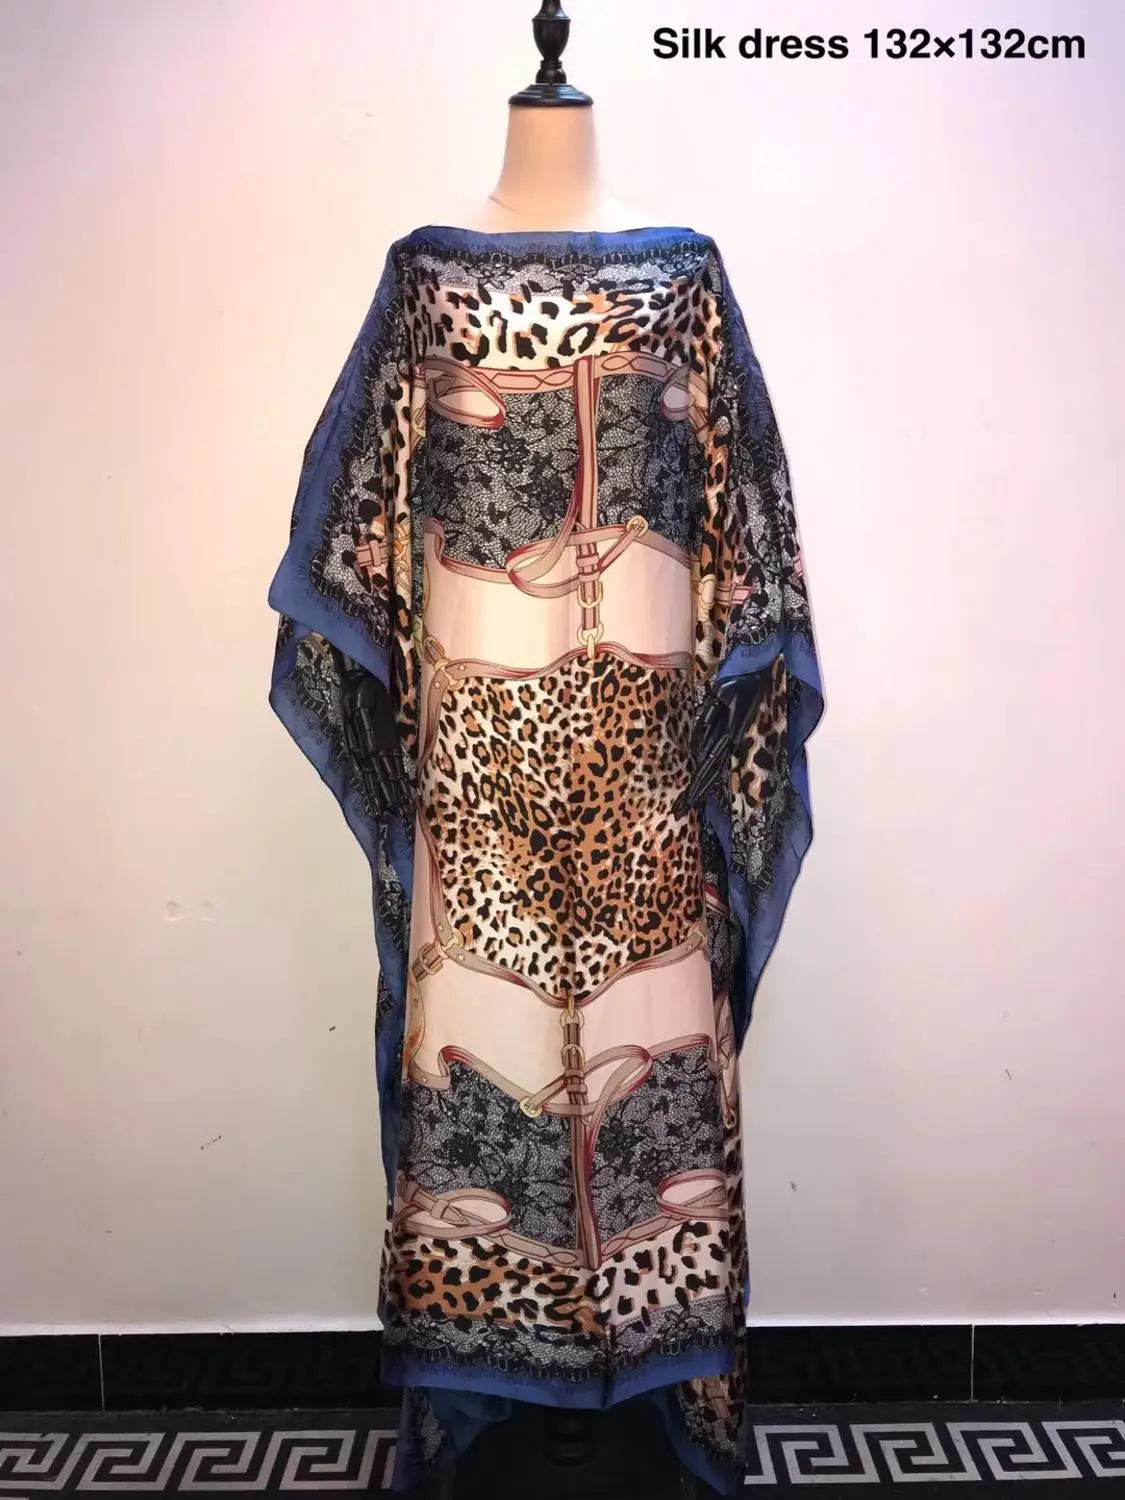 Unikke Europæiske Trykt italienske Kaftan Silke Kjoler Plus size Dashiki Elegant aften, fest kjoler Afrikanske kjoler til kvinder